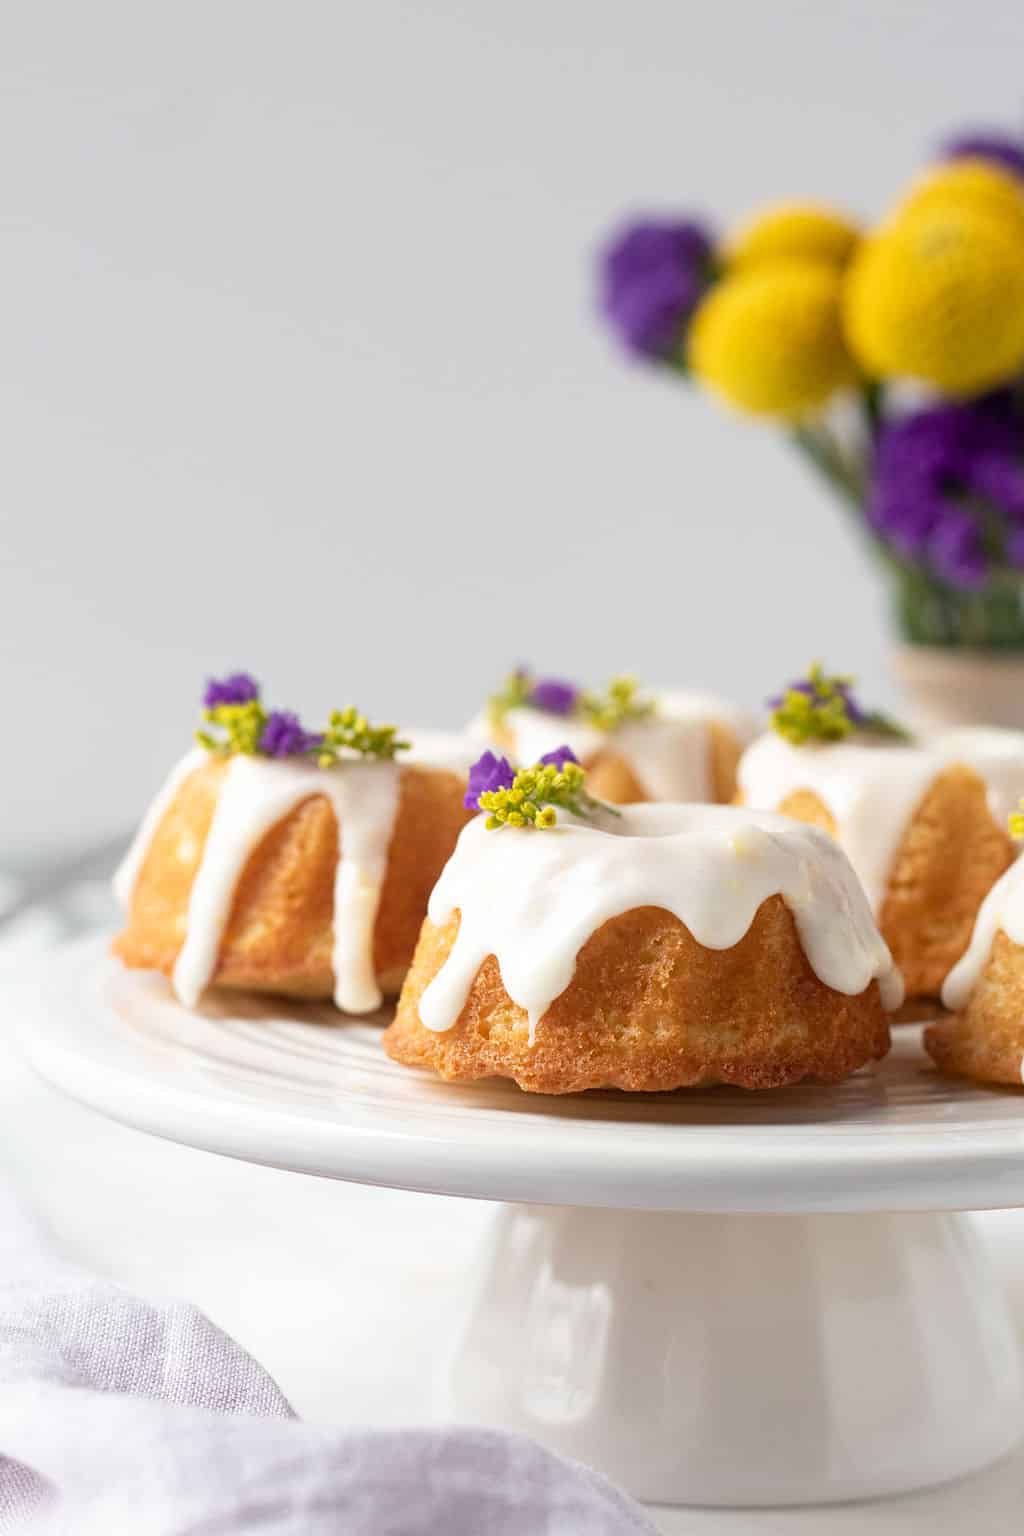 Mini Lemon Bundt Cakes - Simply Whisked